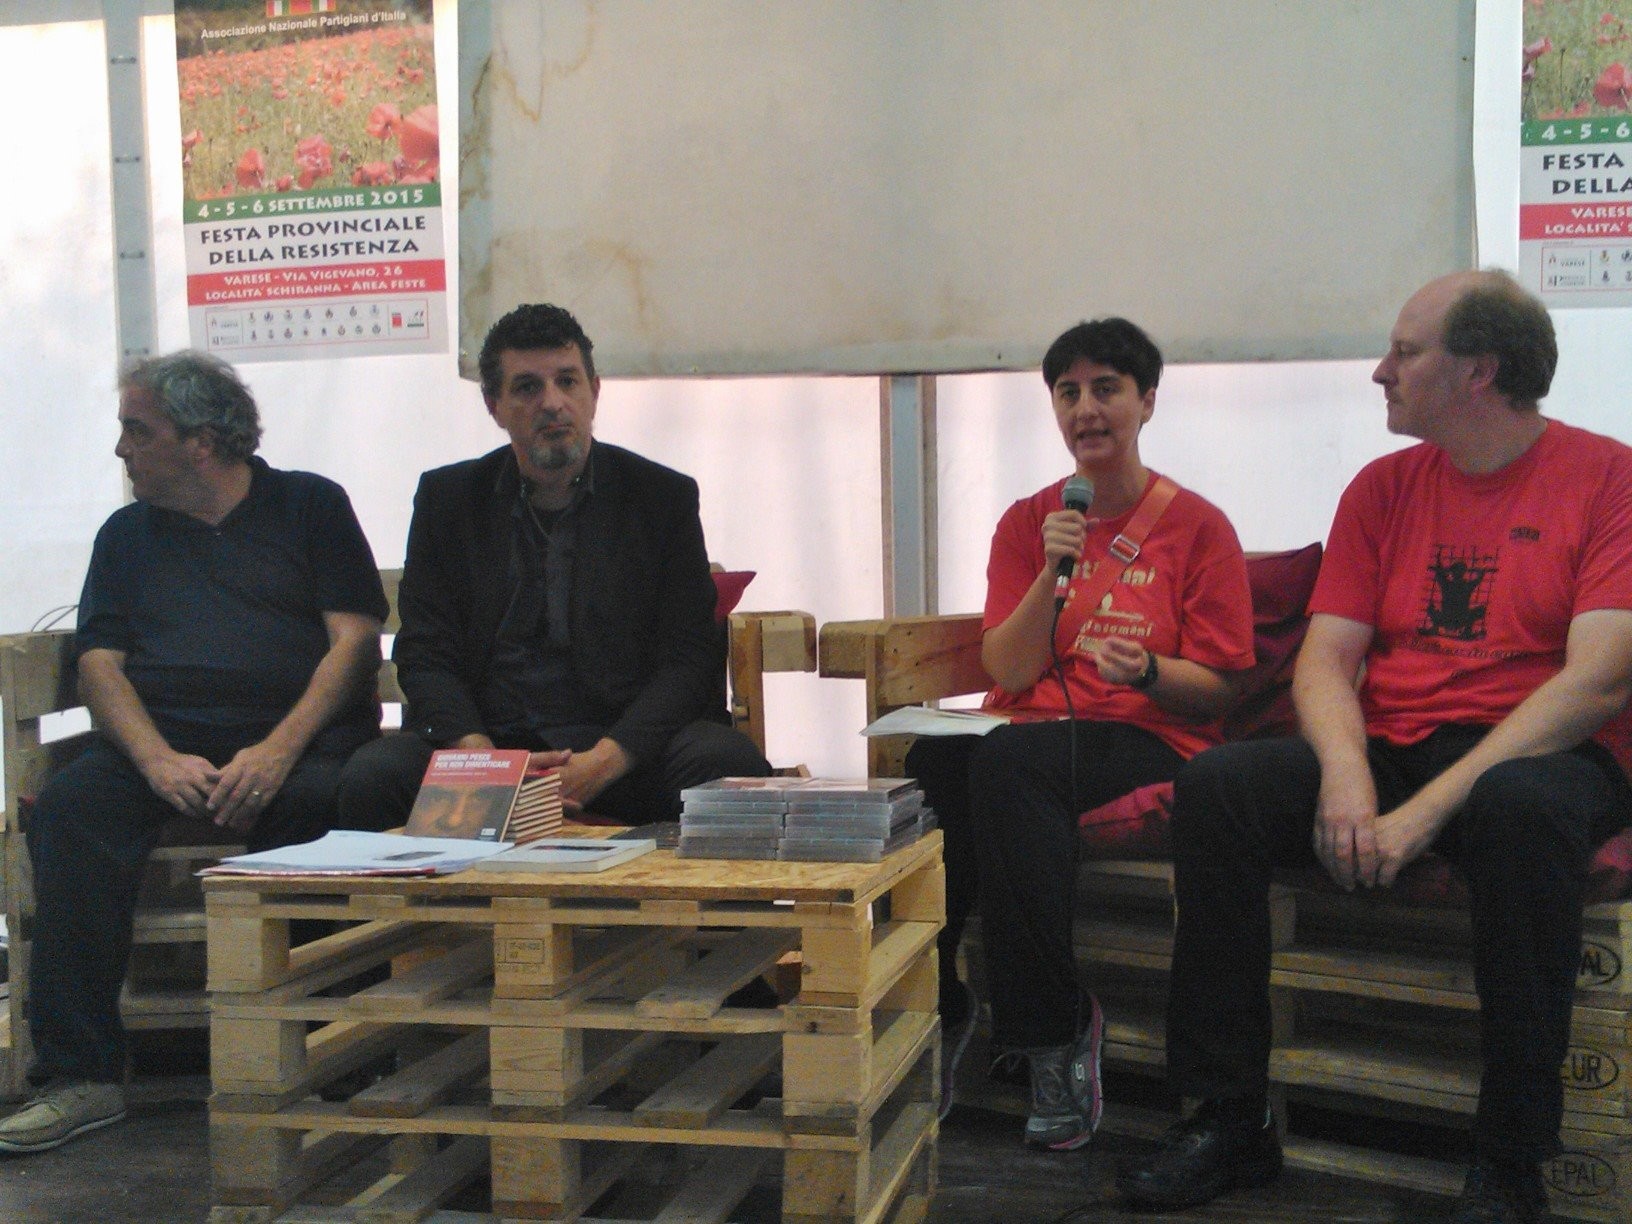 Sul palco di ANPI Varese - Festa Provinciale della Resistenza, con Daniele Biacchessi, Fabrizio Cracolici, Andrea Sigona, per l'impegno Antifascista e per il diritto al disarmo e alla pace